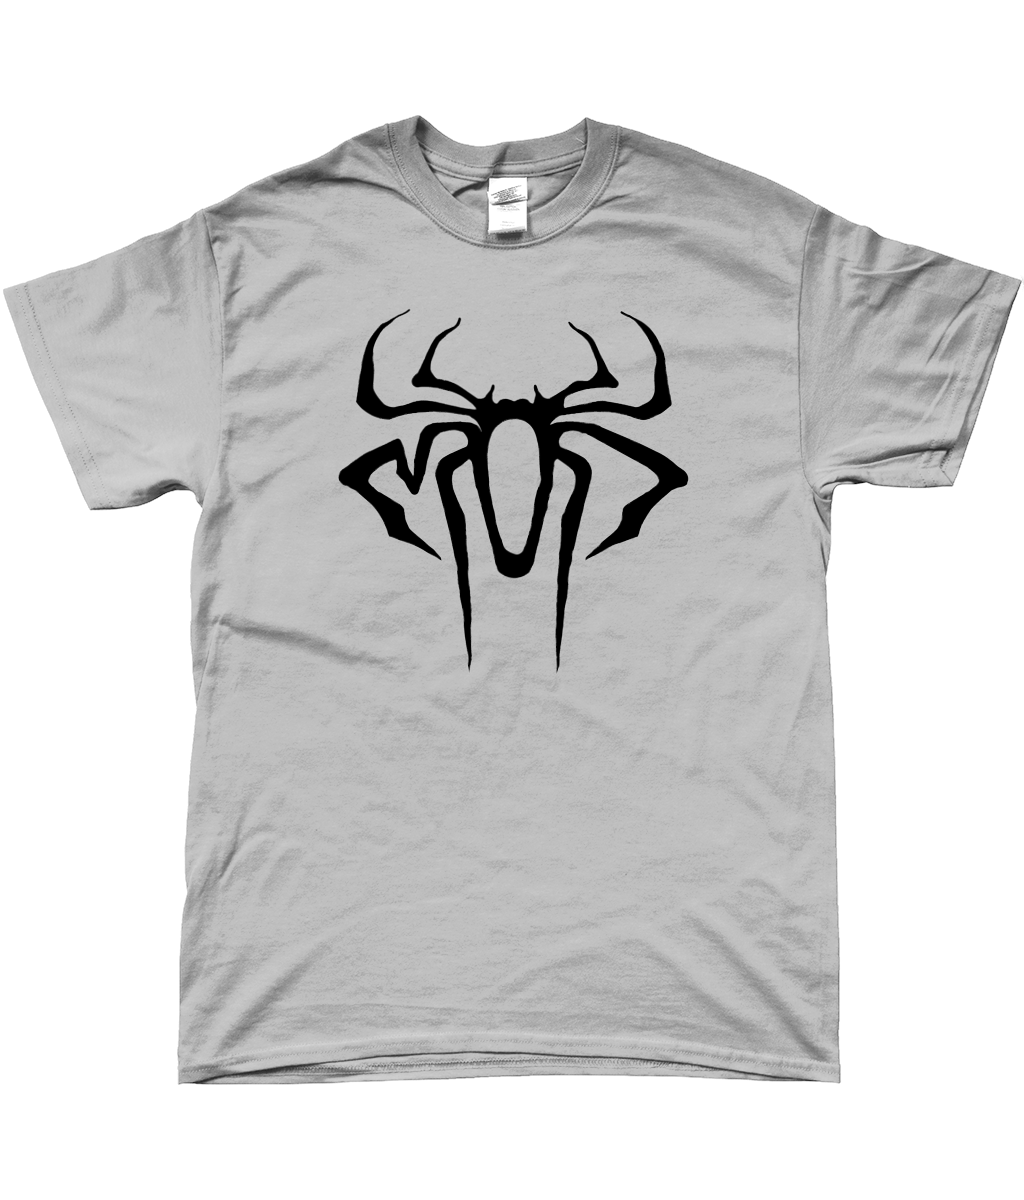 Spider Logo T-shirt